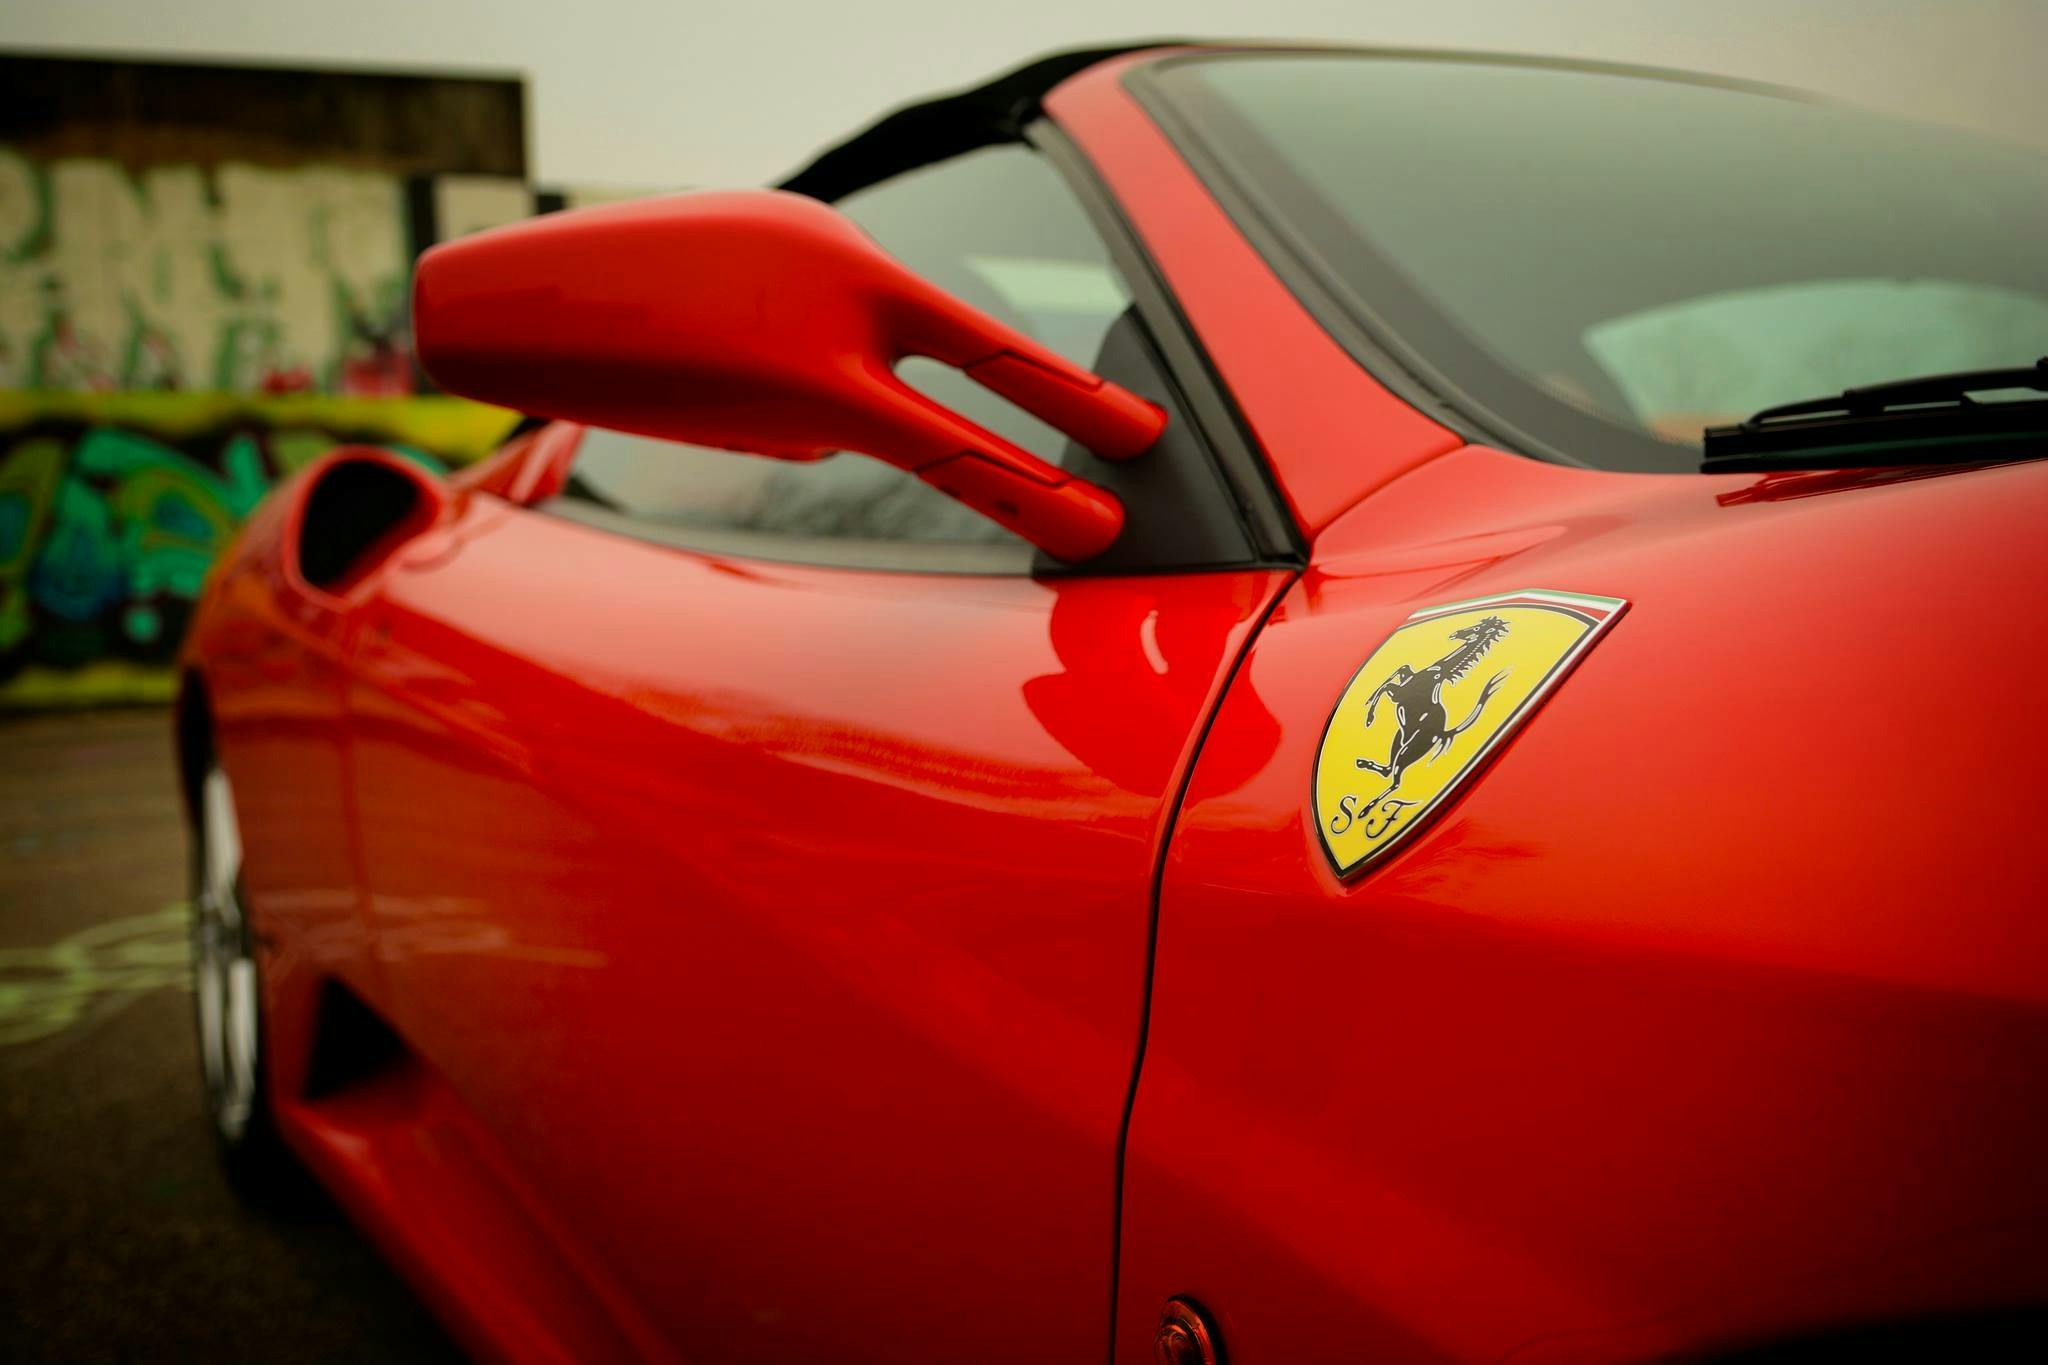 A red Ferrari car. | Photo: Pexels